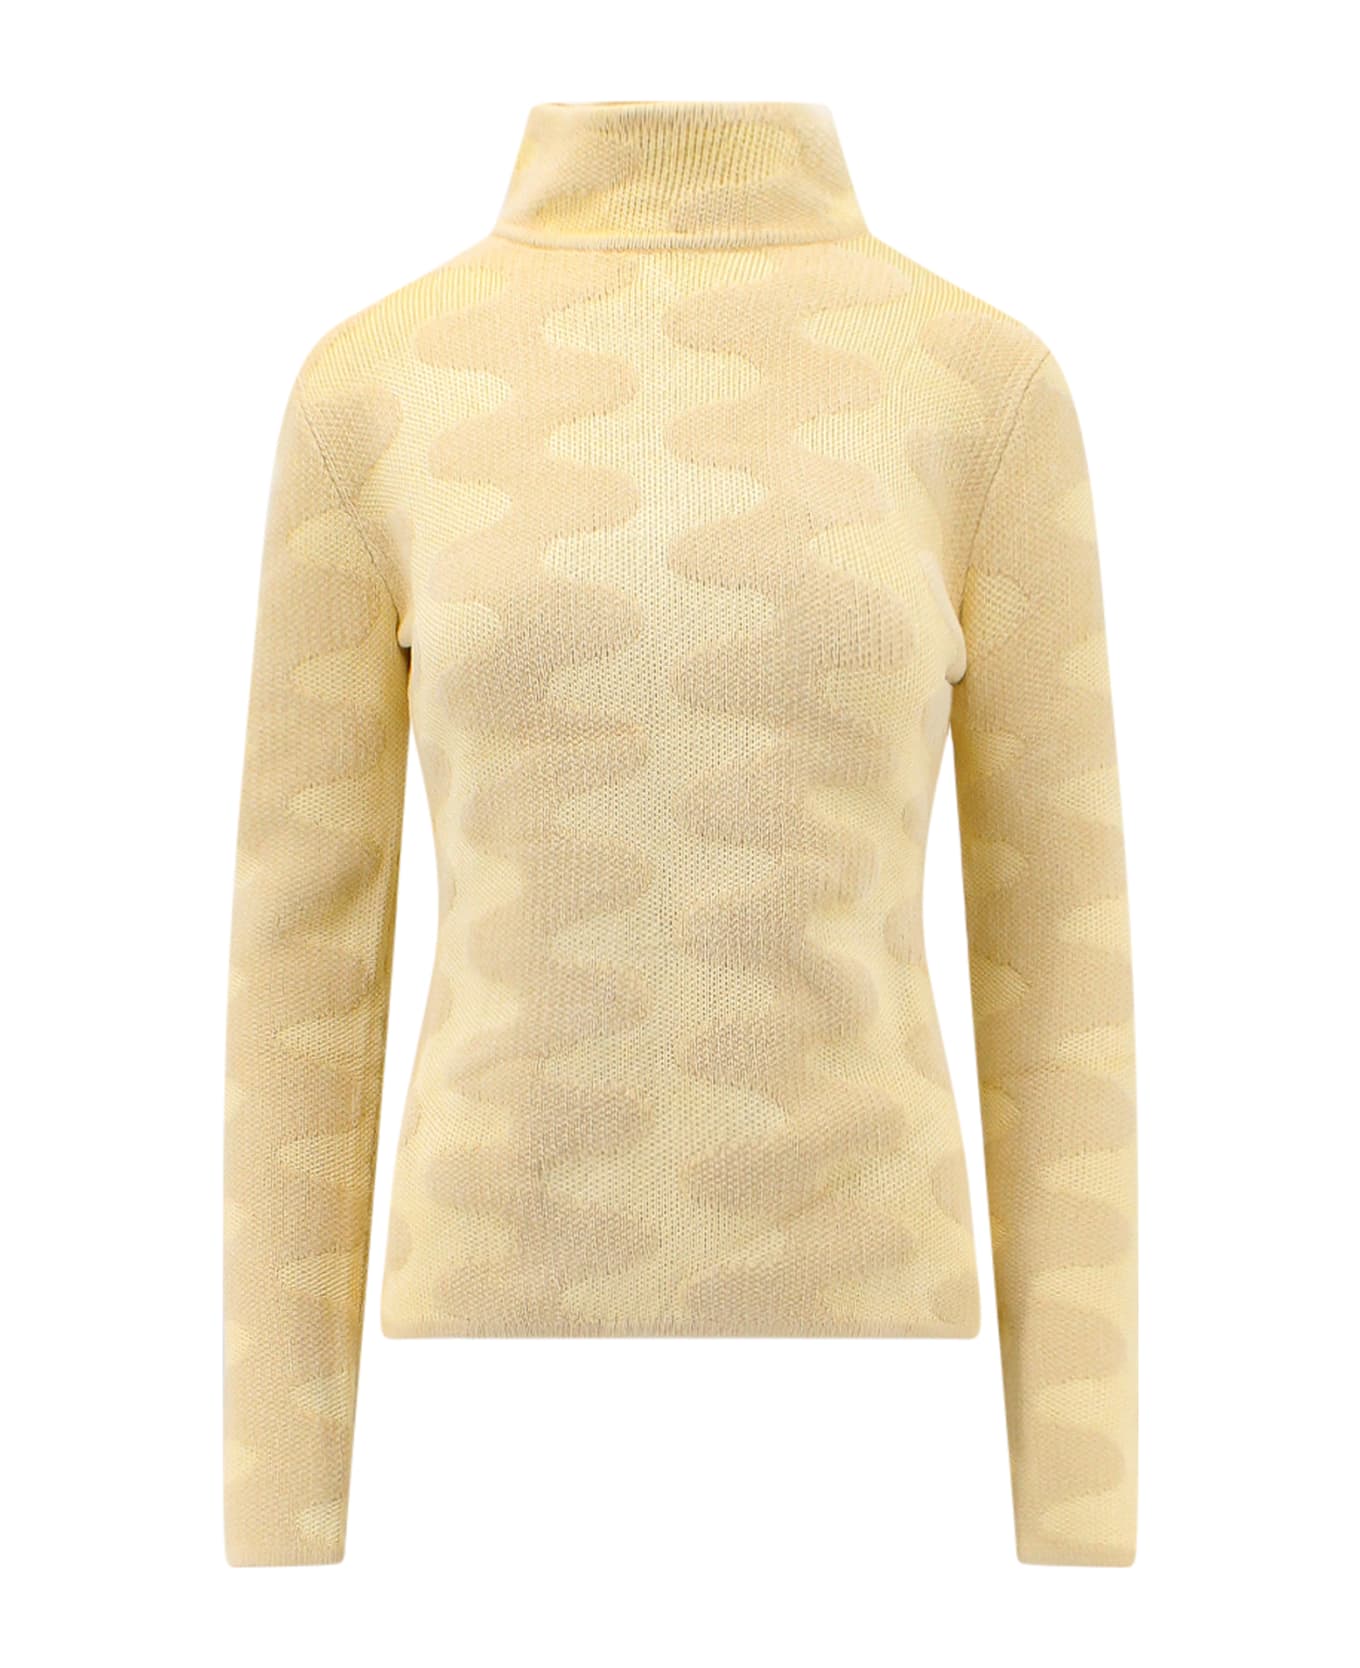 Nanushka Sweater - Beige